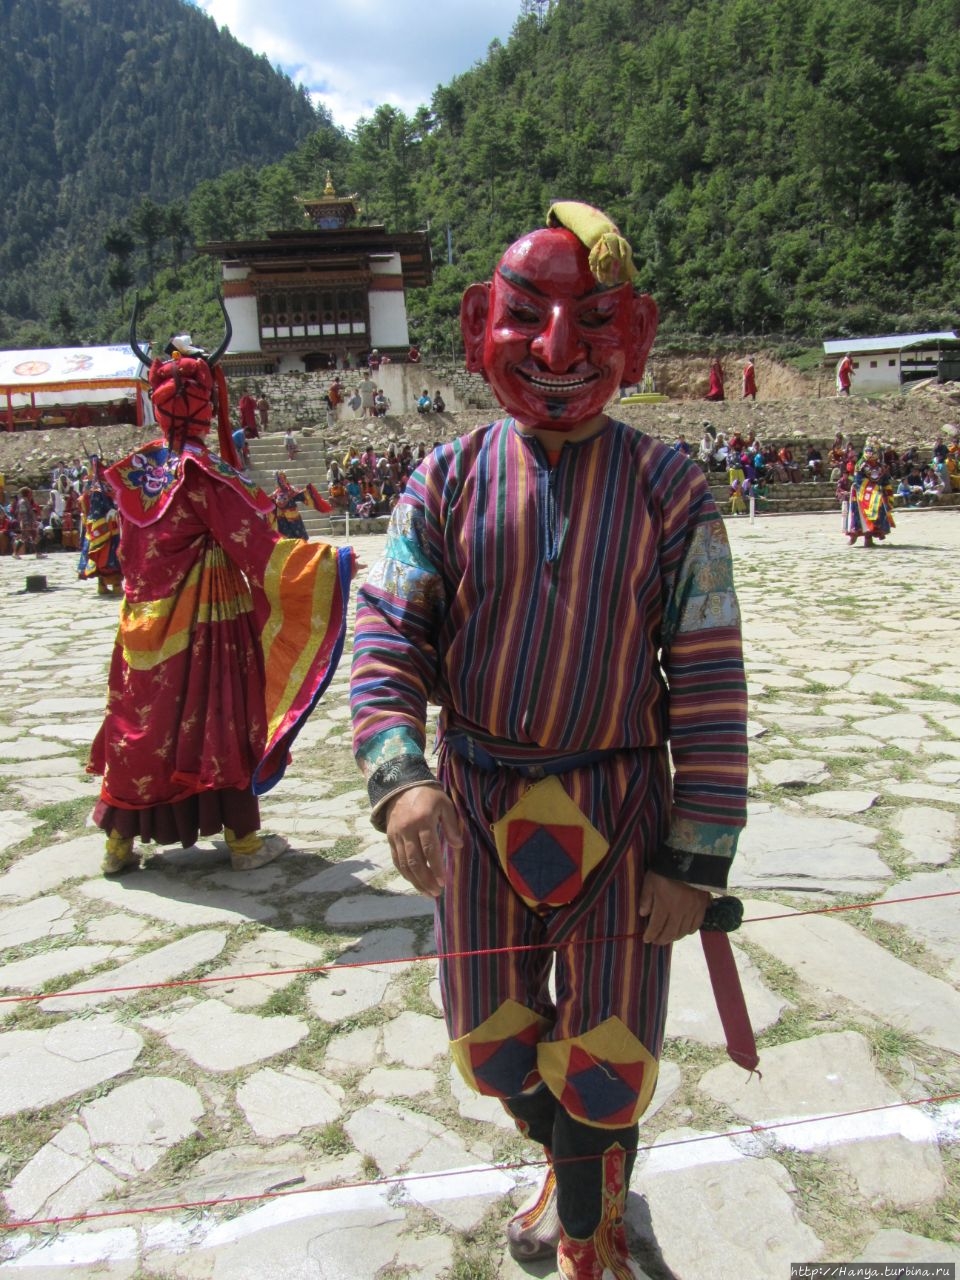 Танцы масок традиционного фестиваля Тцечу в Хаа. Ч.84